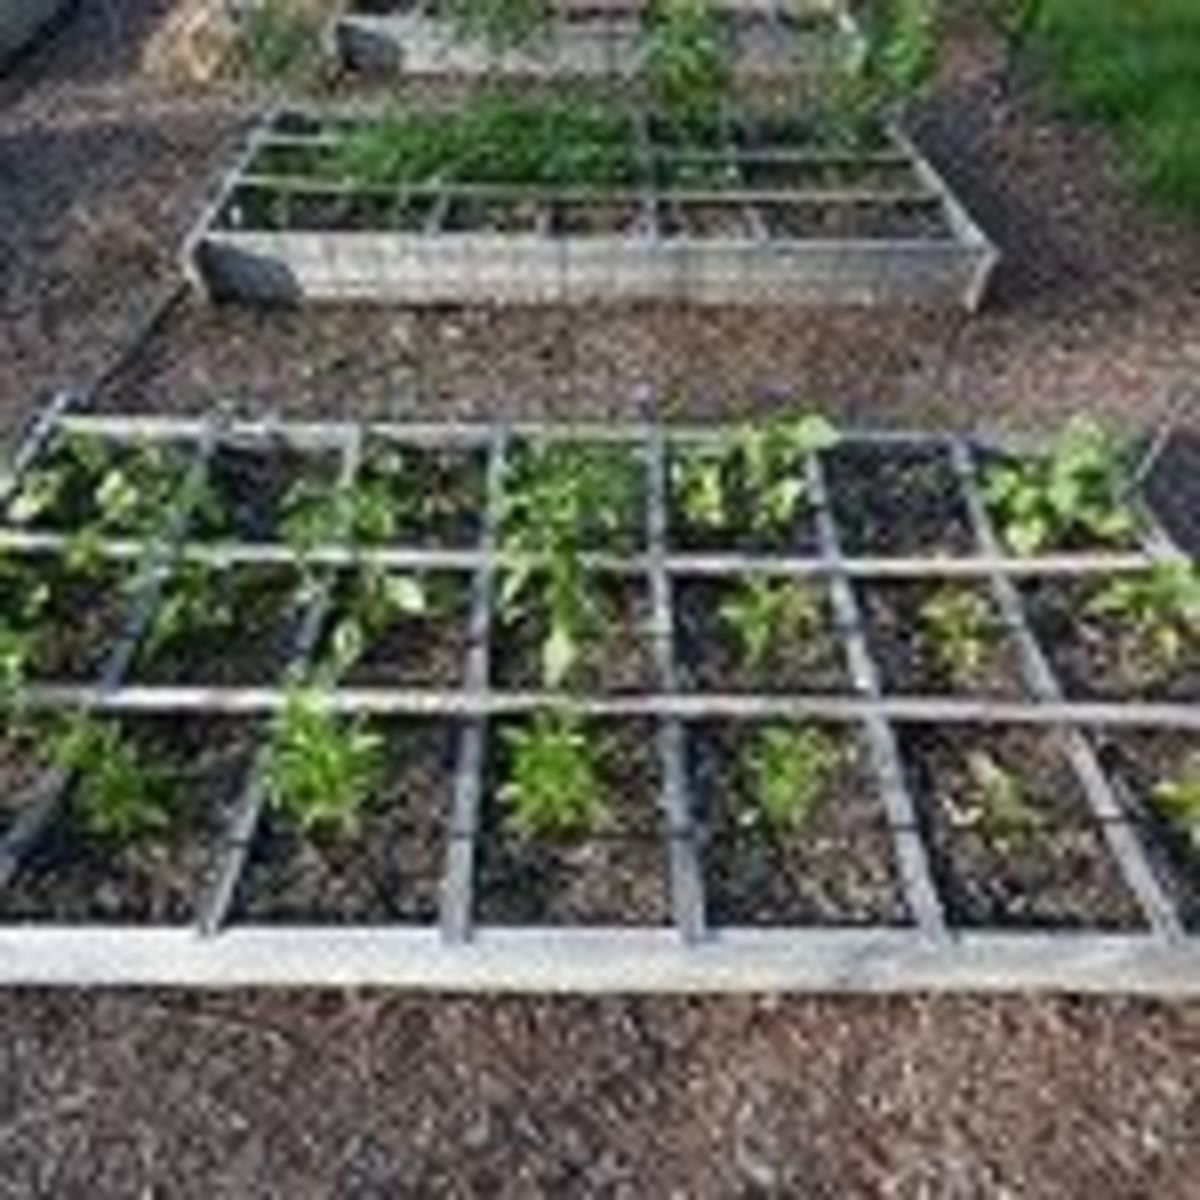 squarefoot-gardening